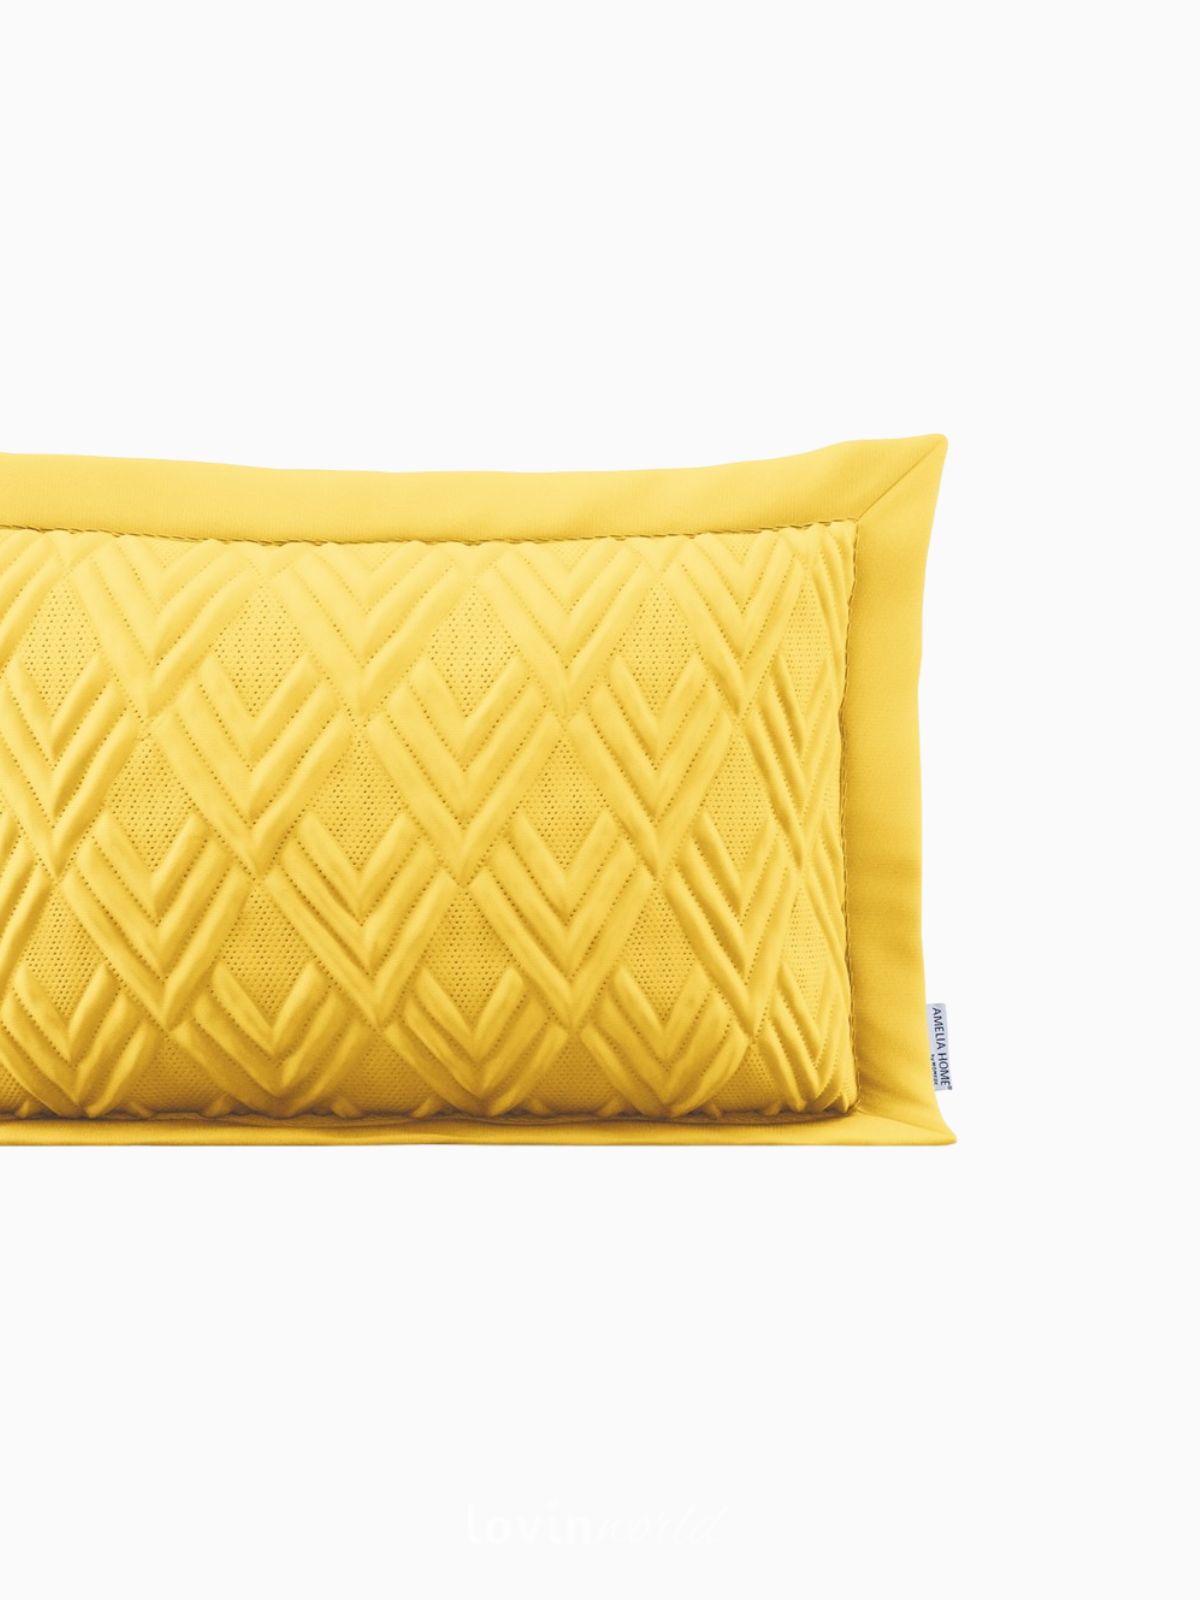 Cuscino decorativo Ophelia in colore giallo 50x70 cm.-3